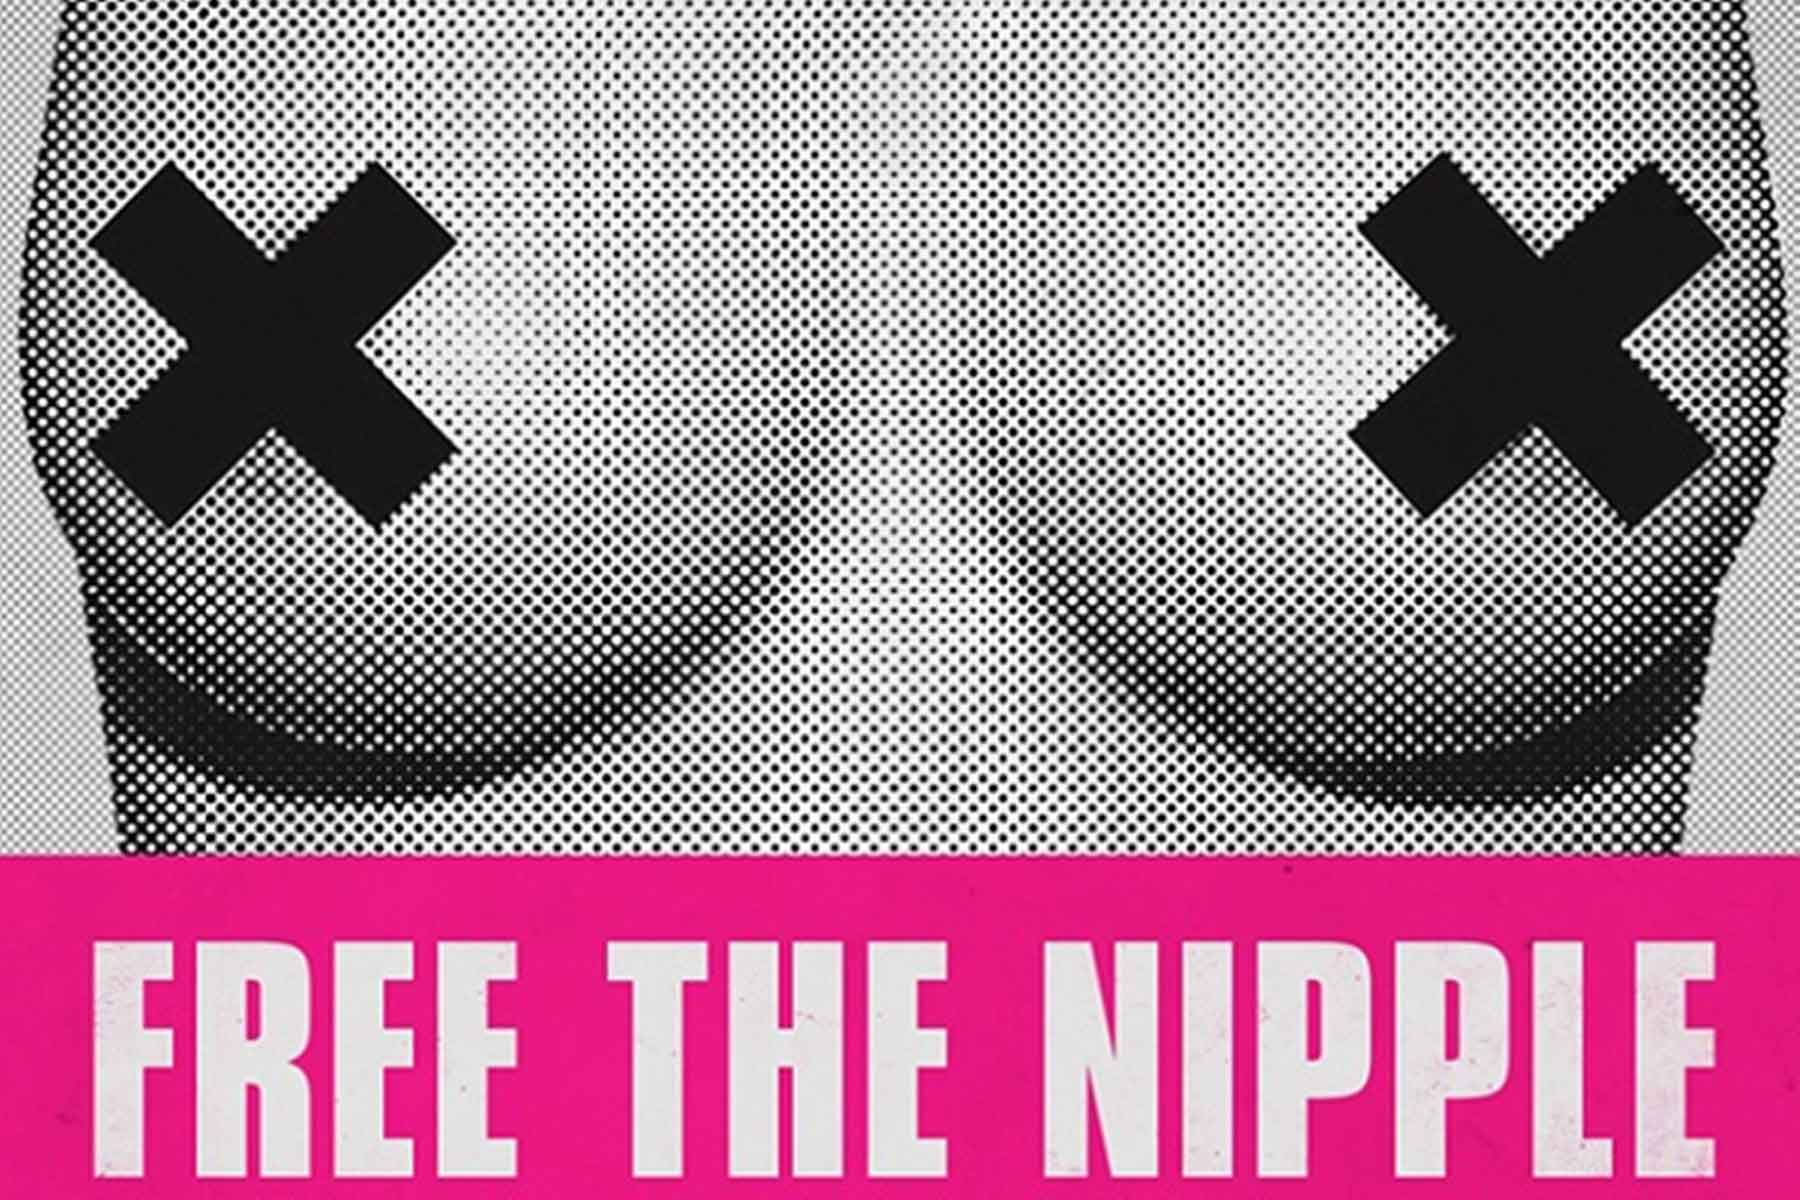  <Free The Nipple>(2012) 포스터